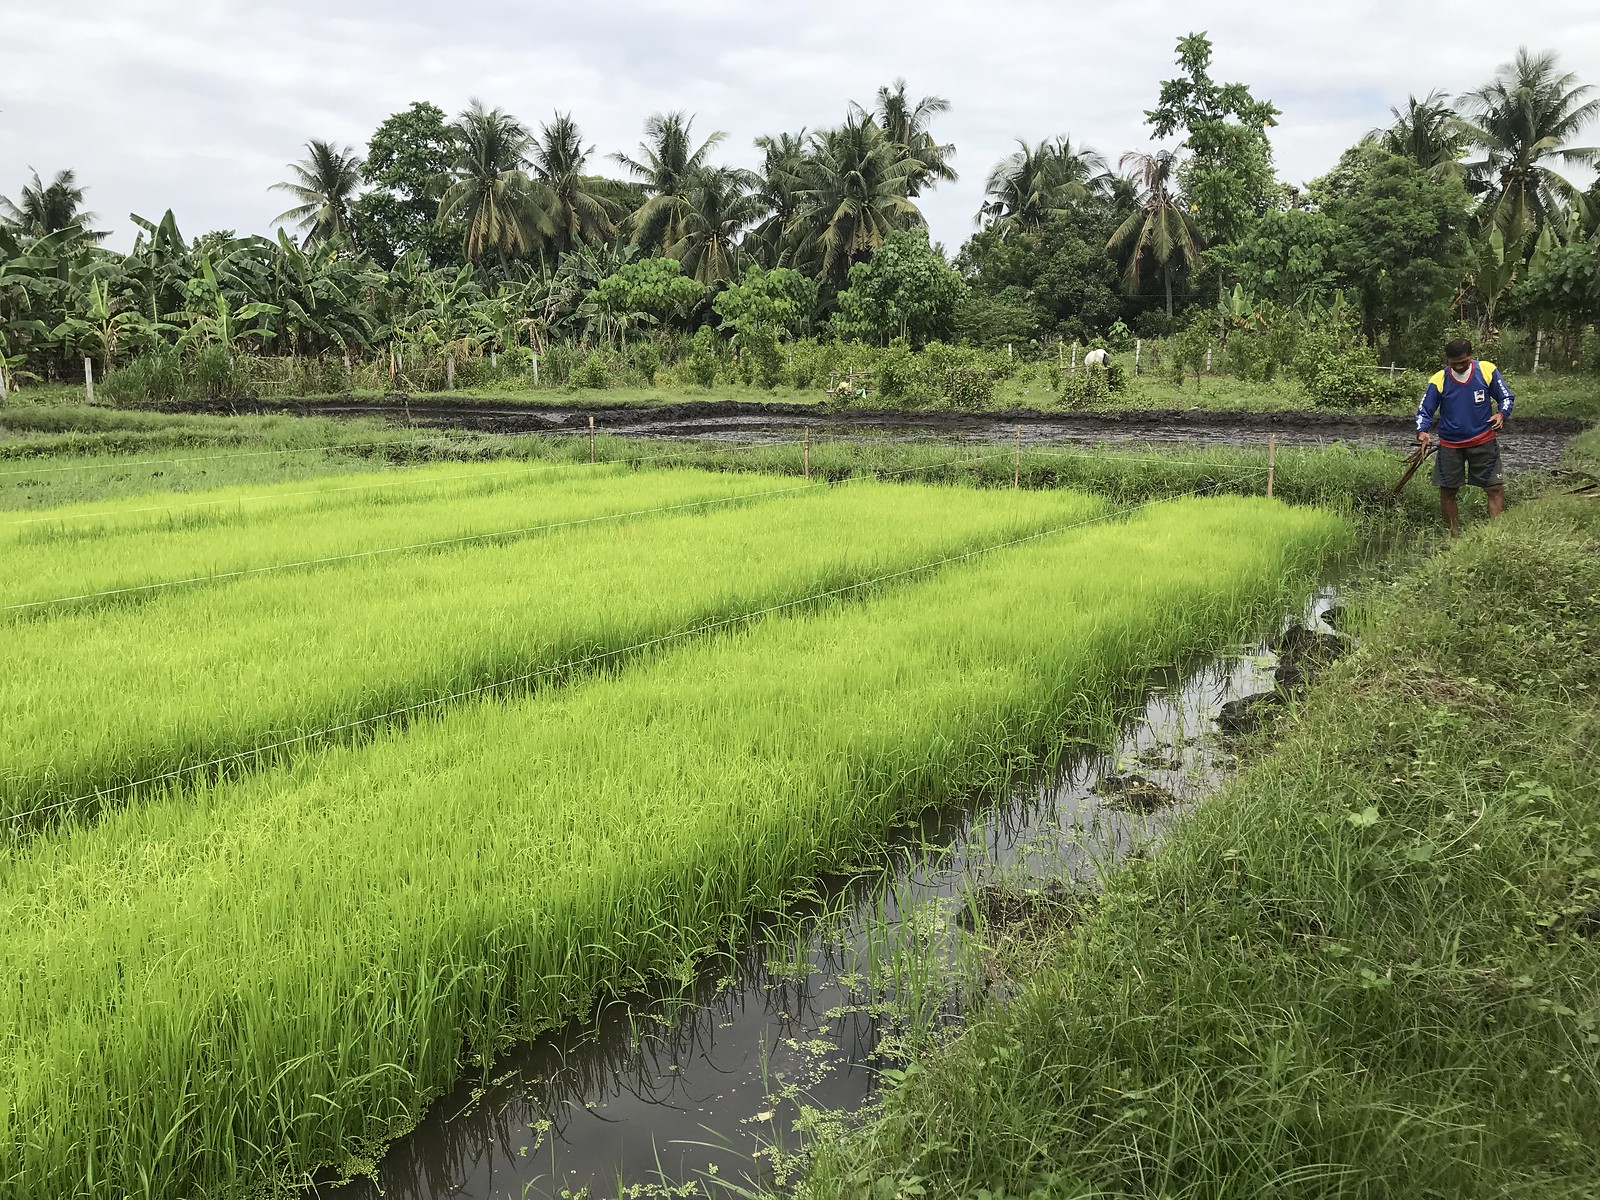 modern-rice-farming-techniques.jpg